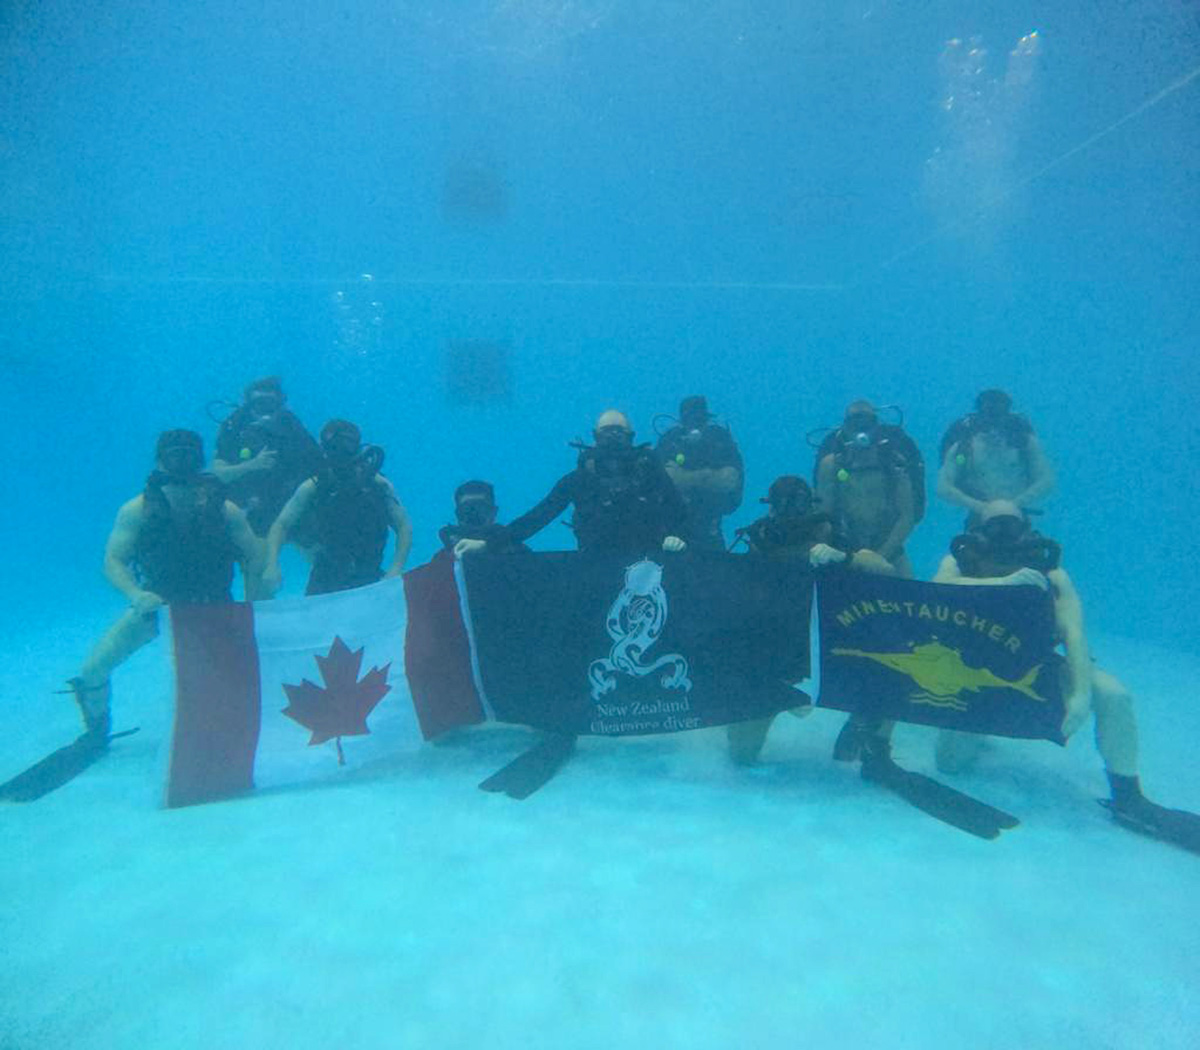 Des plongeurs-démineurs canadiens, néo-zélandais et allemands suivent un cours de plongée libre civile pendant leur détachement auprès de l'équipe de plongée néo-zélandaise. Photos fournies